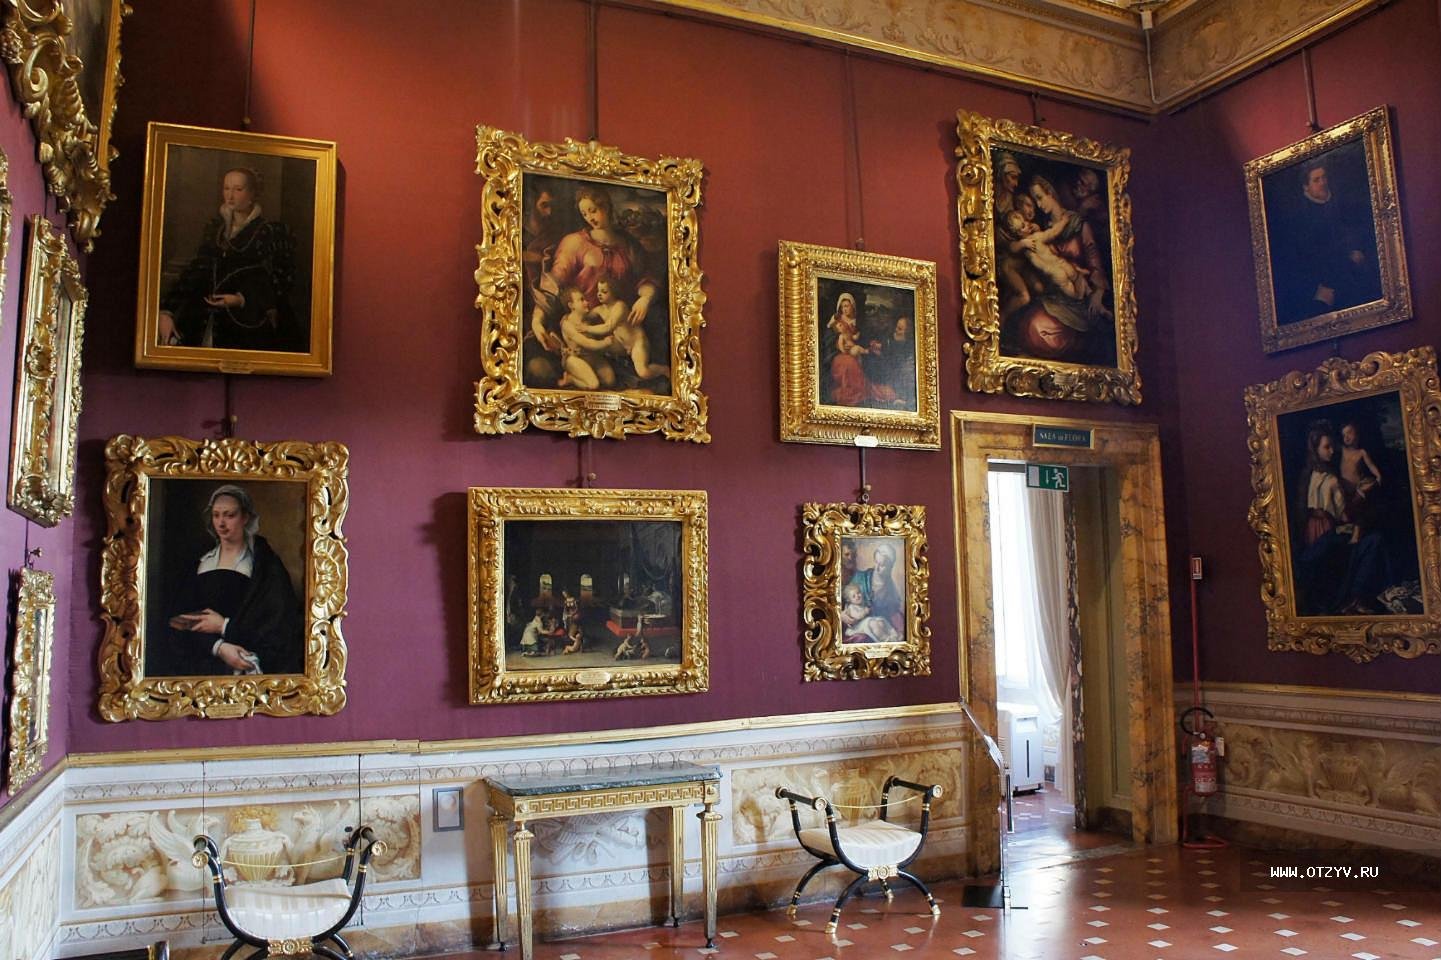 Коллекция картин. Палаццо Питти галерея современного искусства. Палаццо Питти картины. Галерея Питти картины. Палаццо Питти во Флоренции 17 век живопись.